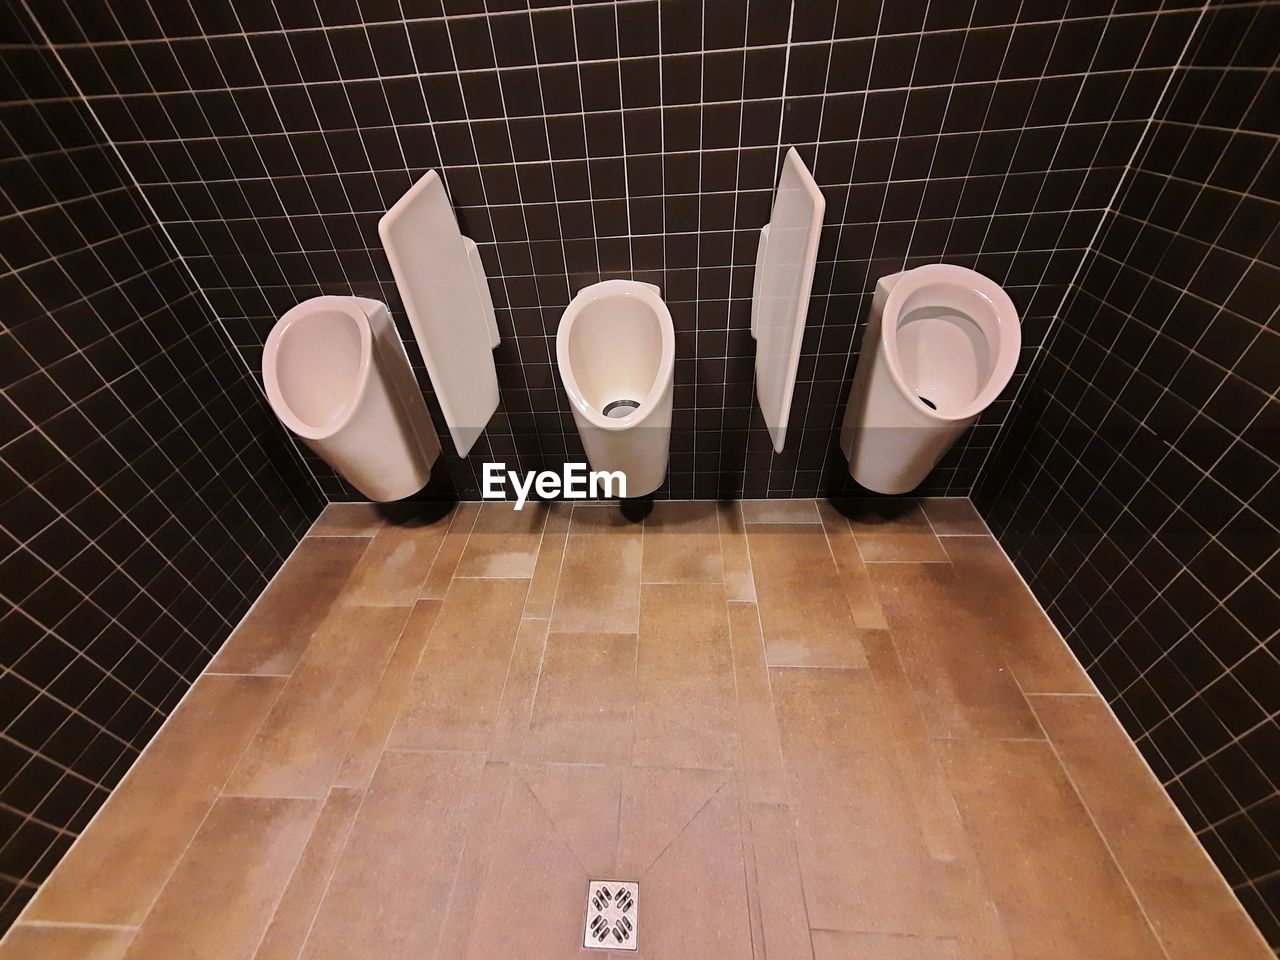 Mens place toilet 